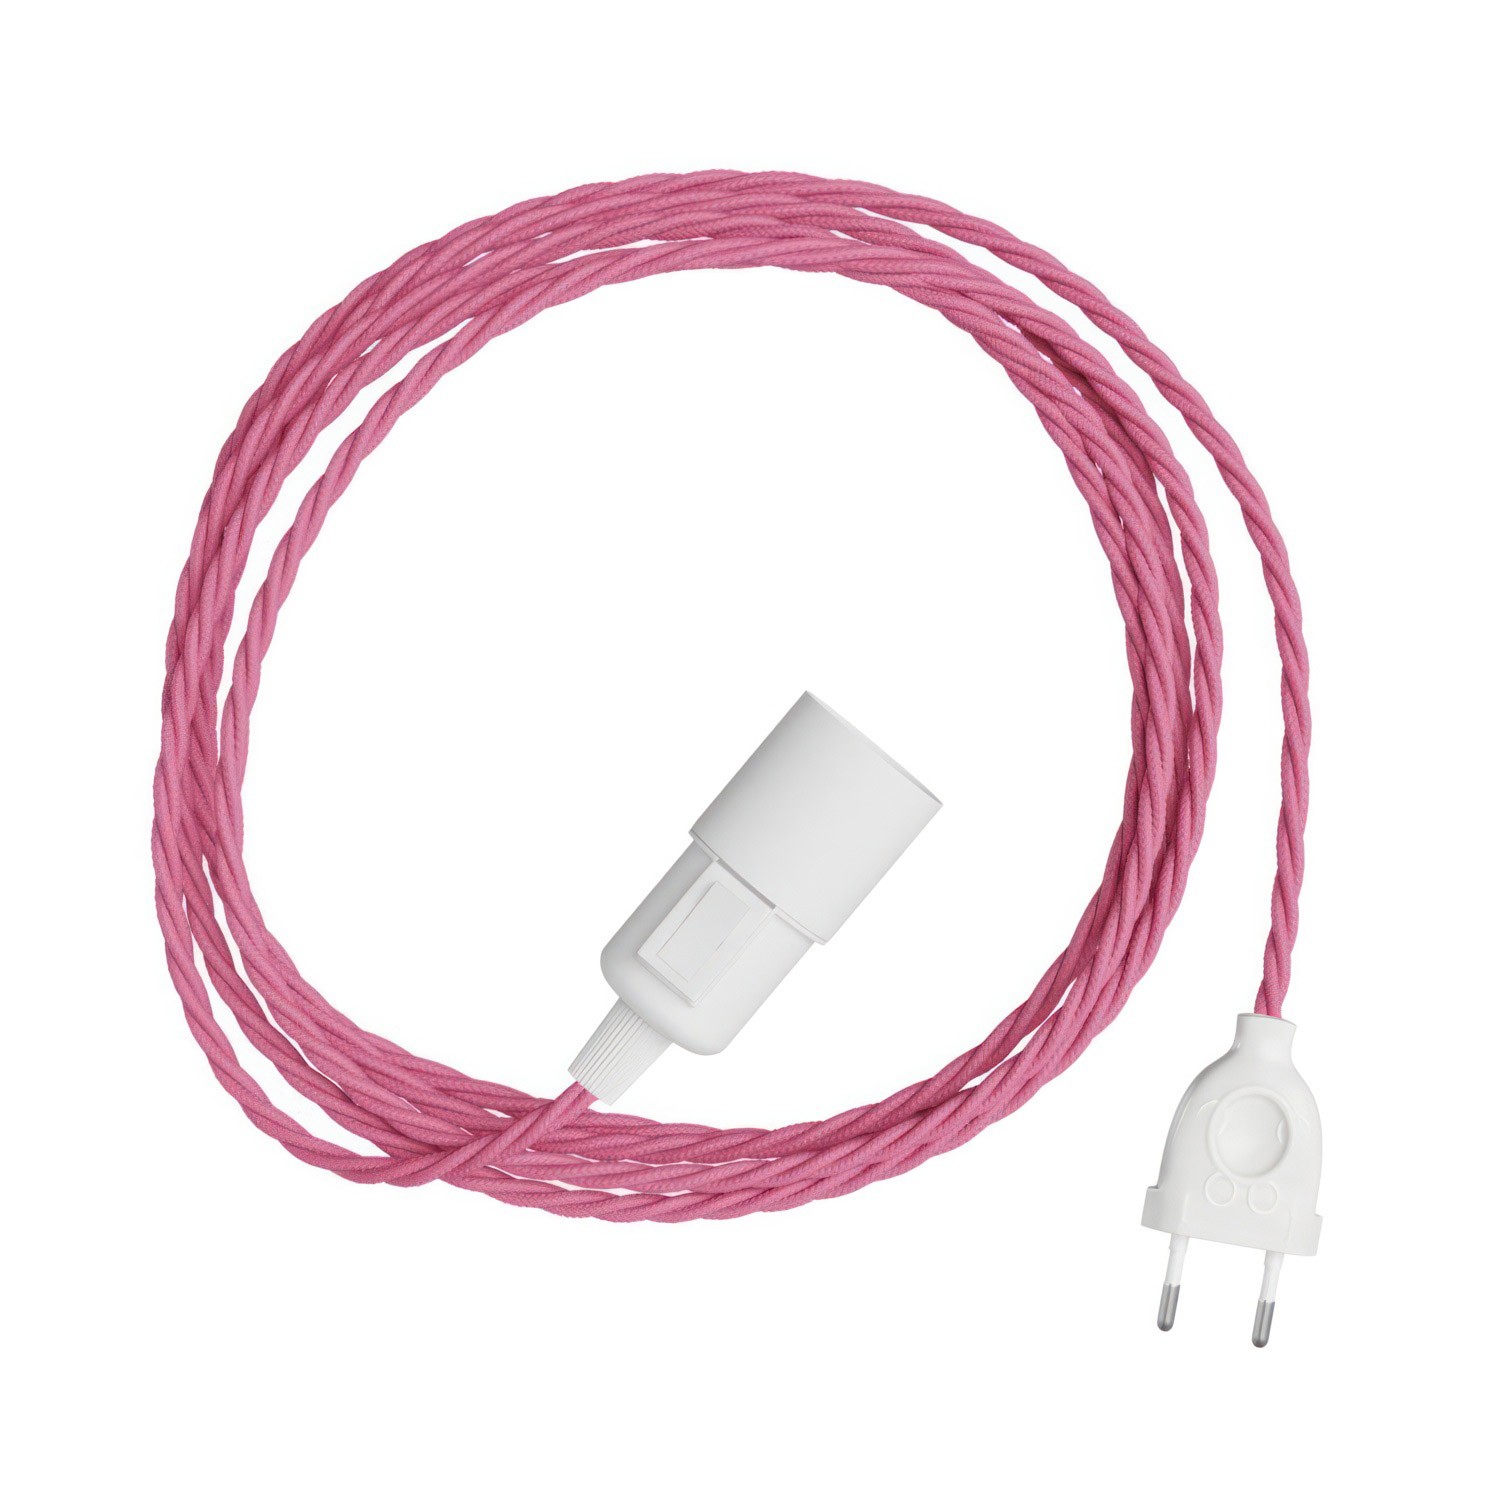 Snake Twisted - Plug-in lampe med farvet snoet tekstilkabel